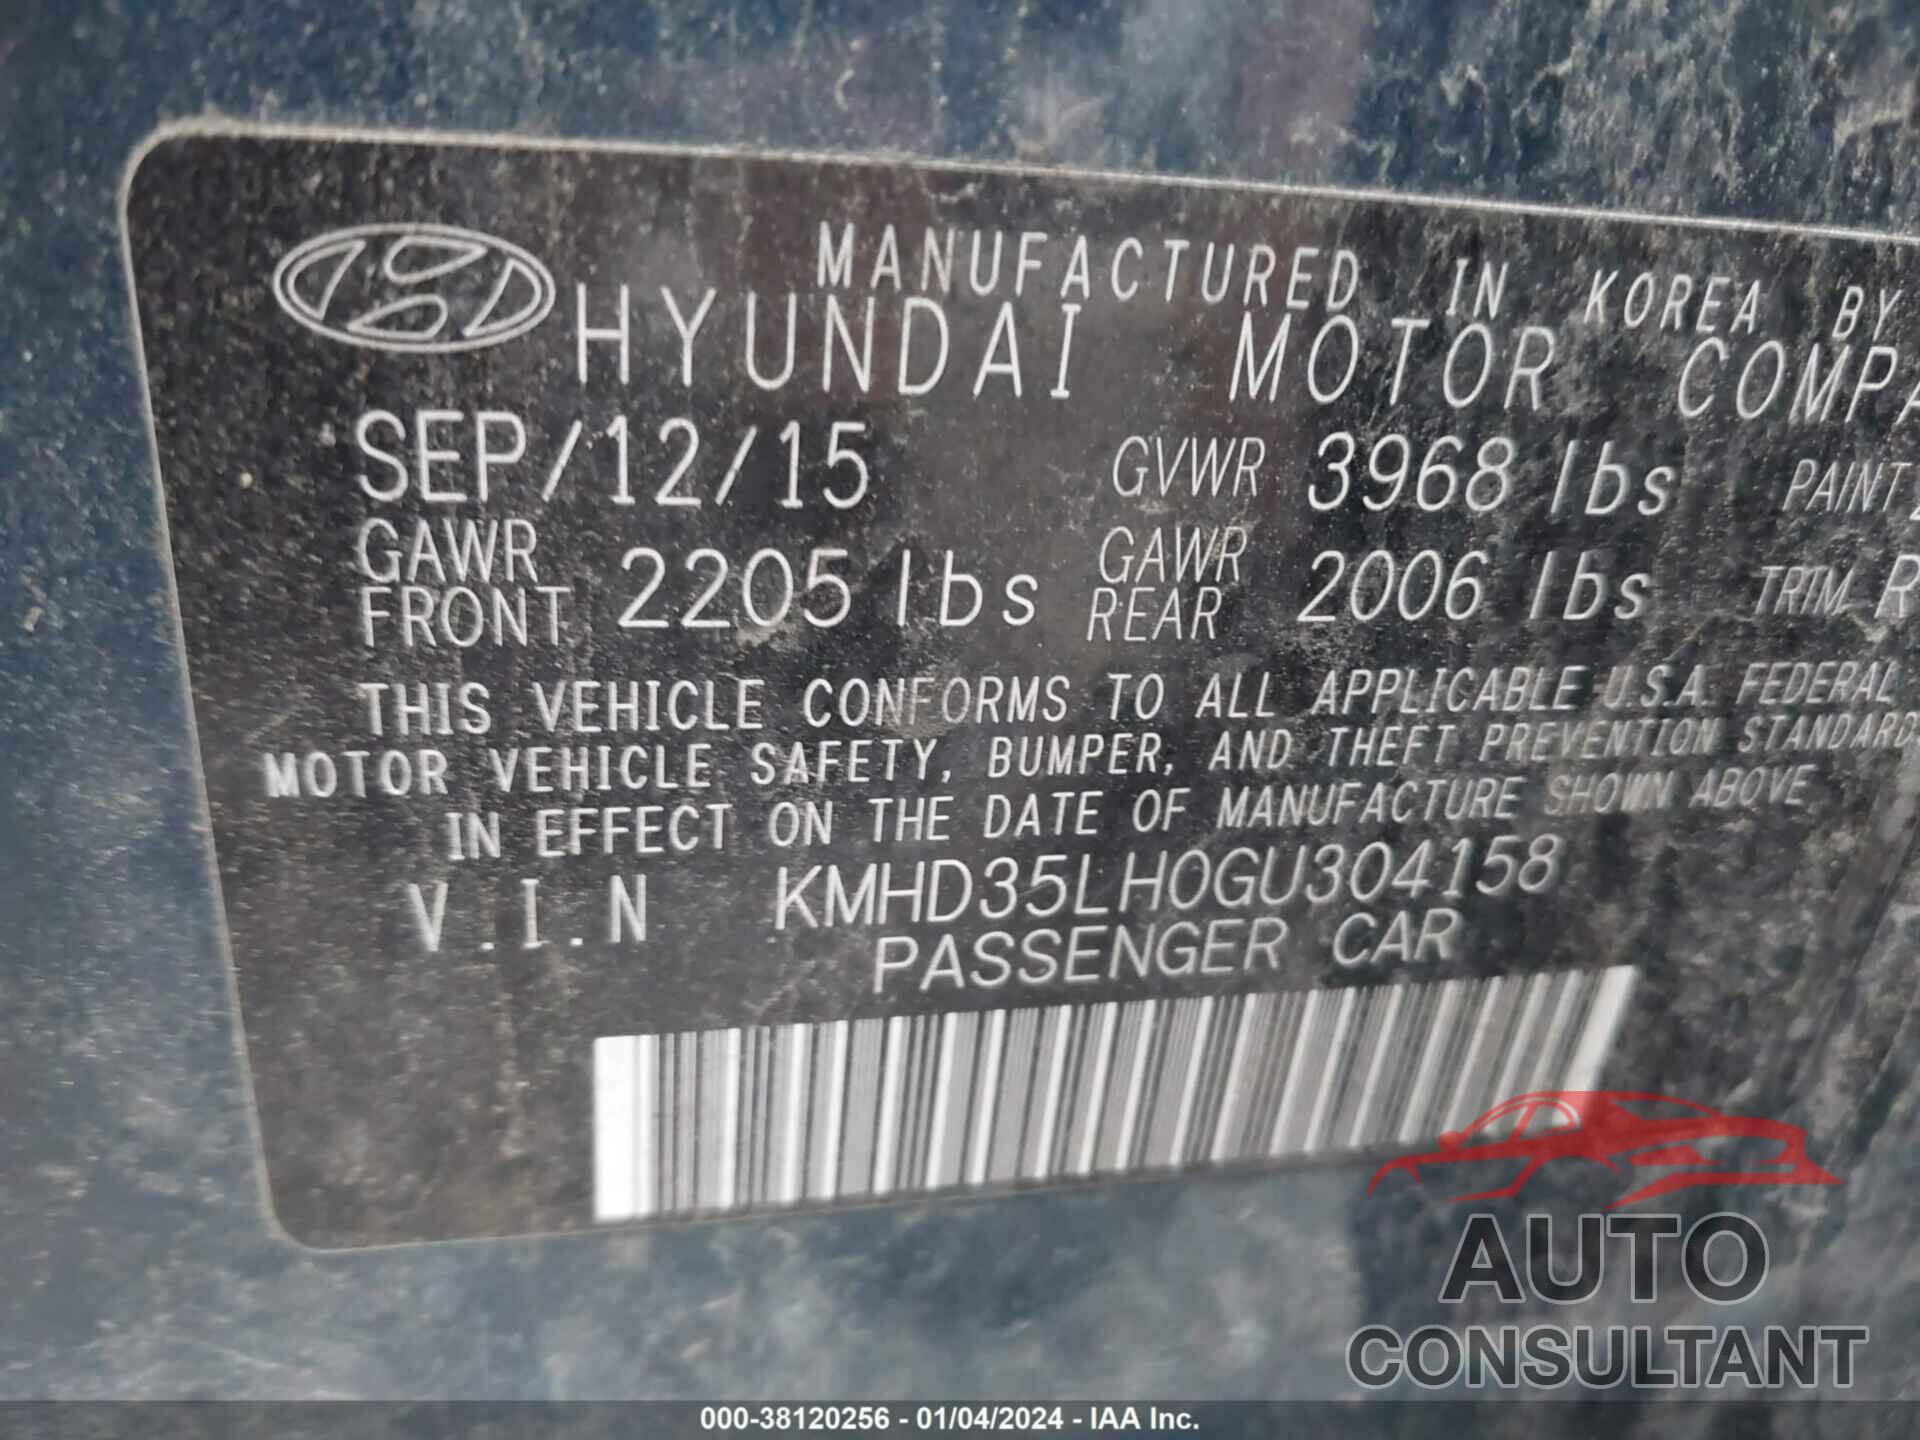 HYUNDAI ELANTRA GT 2016 - KMHD35LH0GU304158